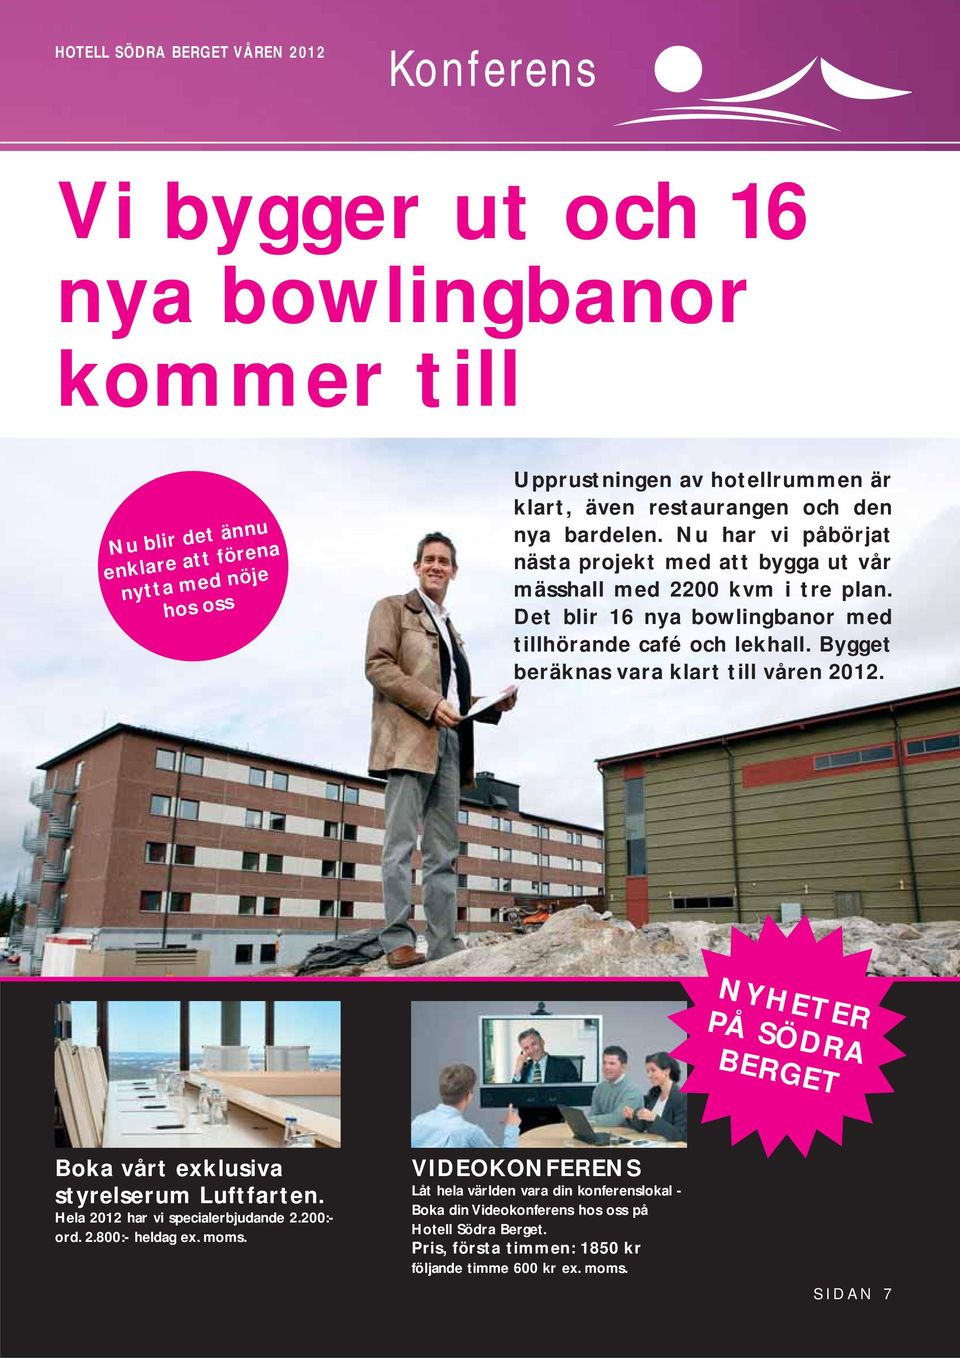 Det blir 16 nya bowlingbanor med tillhörande café och lekhall. Bygget beräknas vara klart till våren 2012. NYHETER PÅ SÖDRA BERGET Boka vårt exklusiva styrelserum Luftfarten.